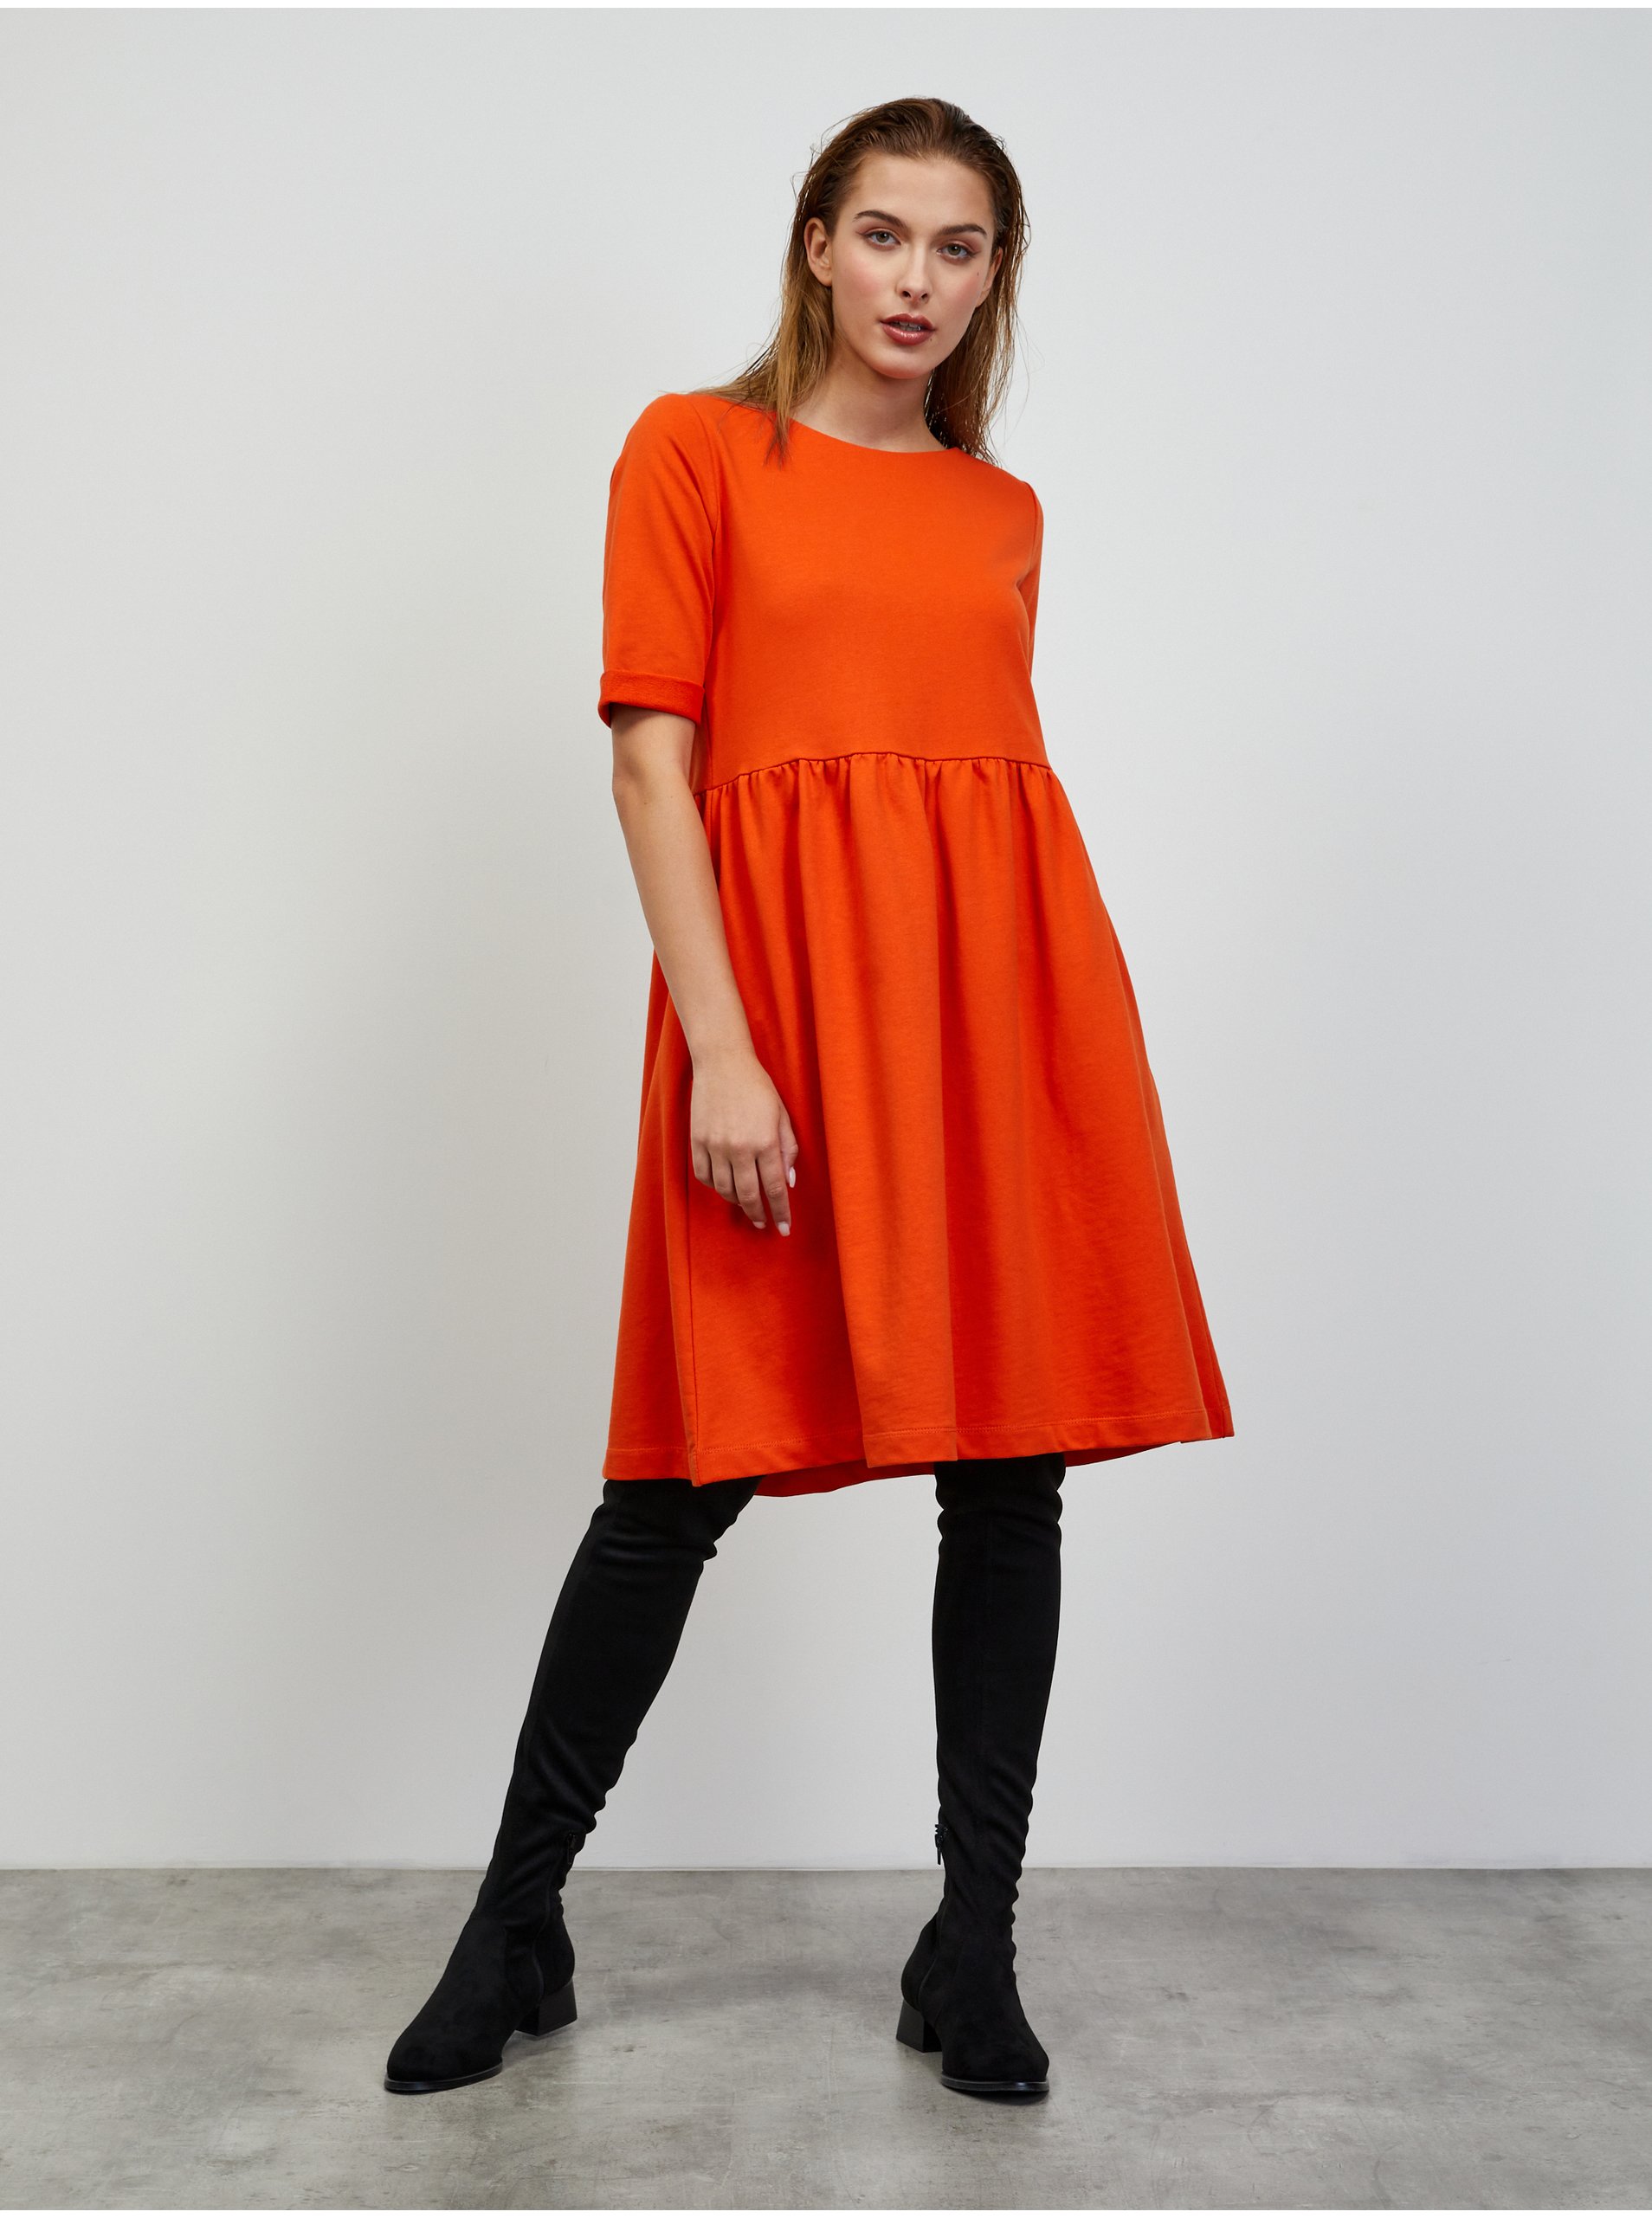 Lacno Oranžové mikinové basic šaty ZOOT.lab Monika 2